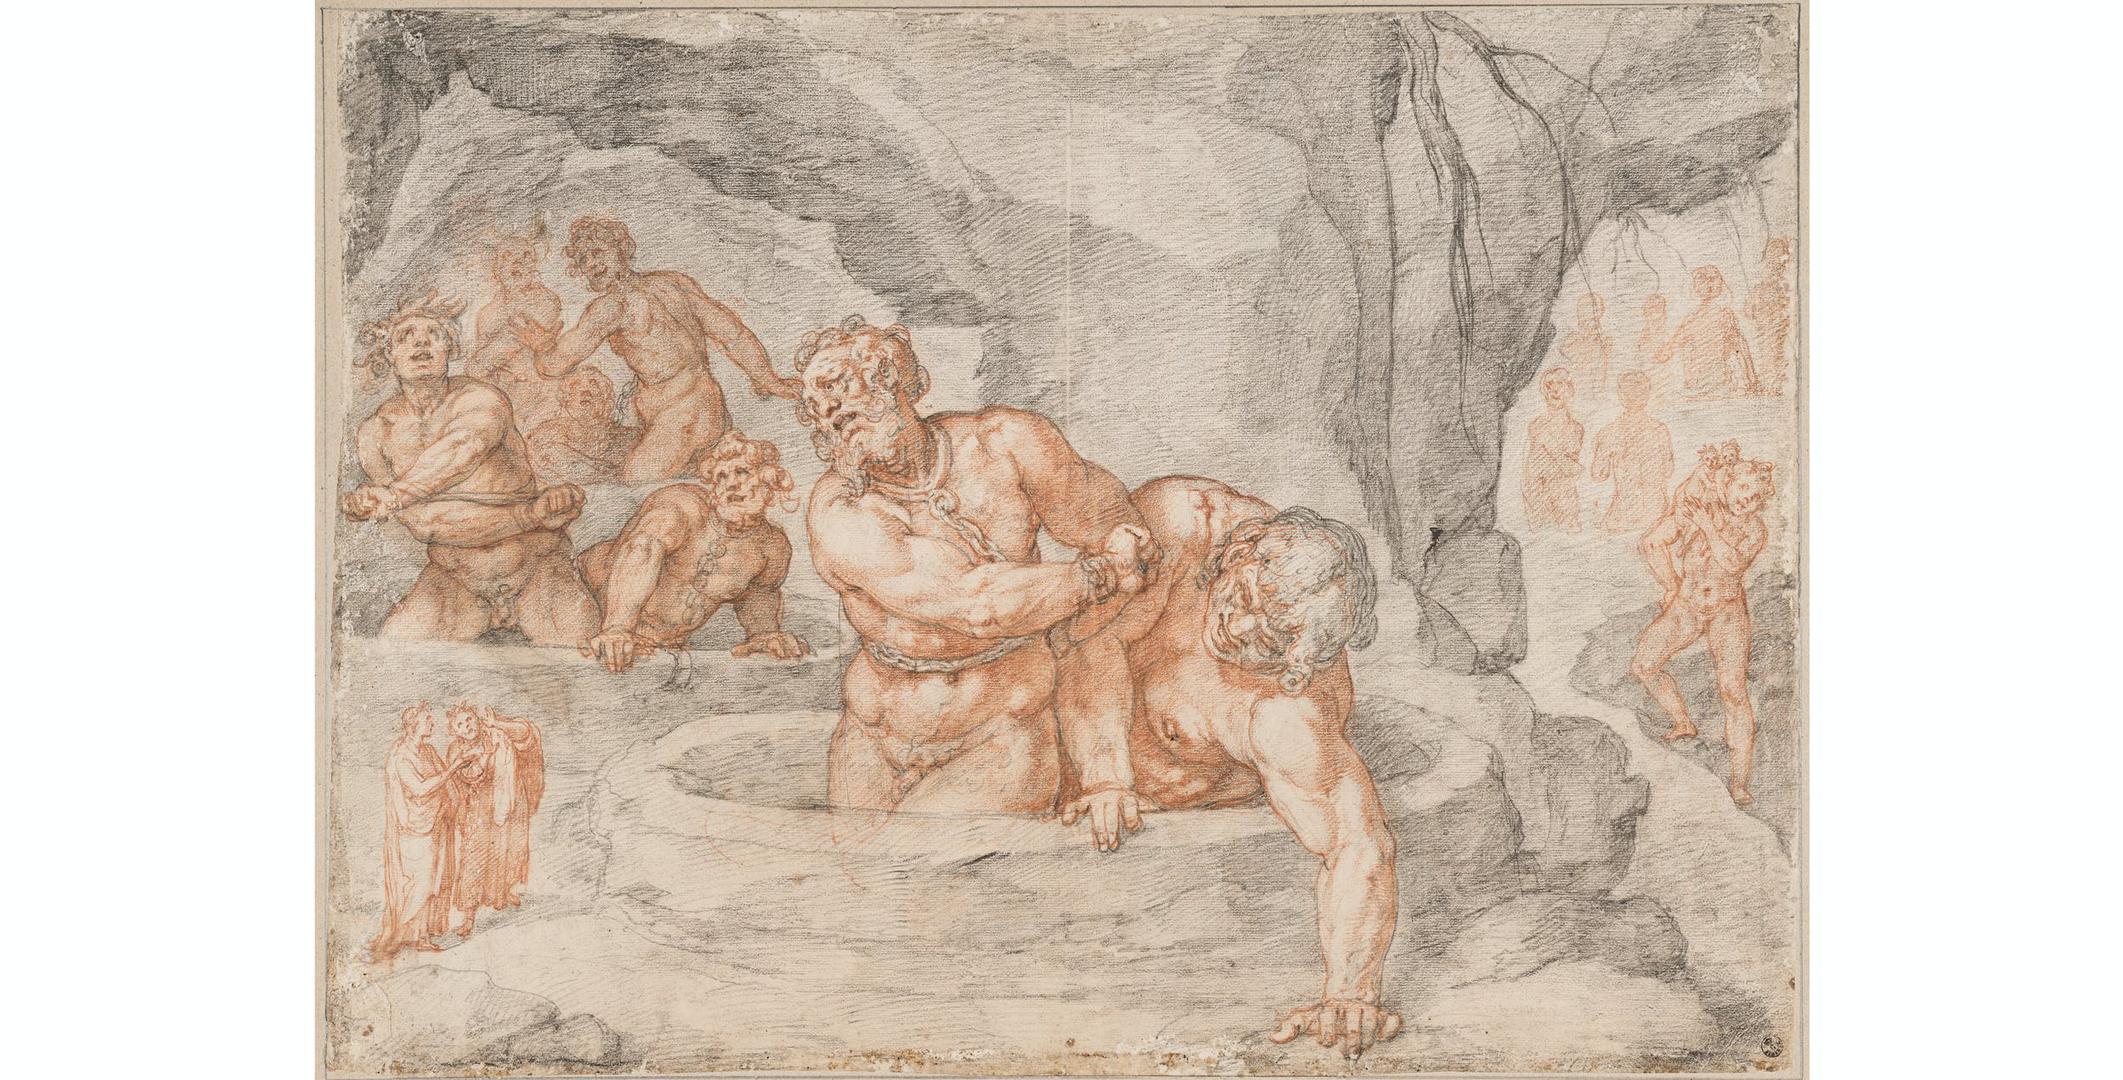 Galerija Uffizi - crteži "Božanstvene komedije" renesansnog slikara Federica Zuccarija